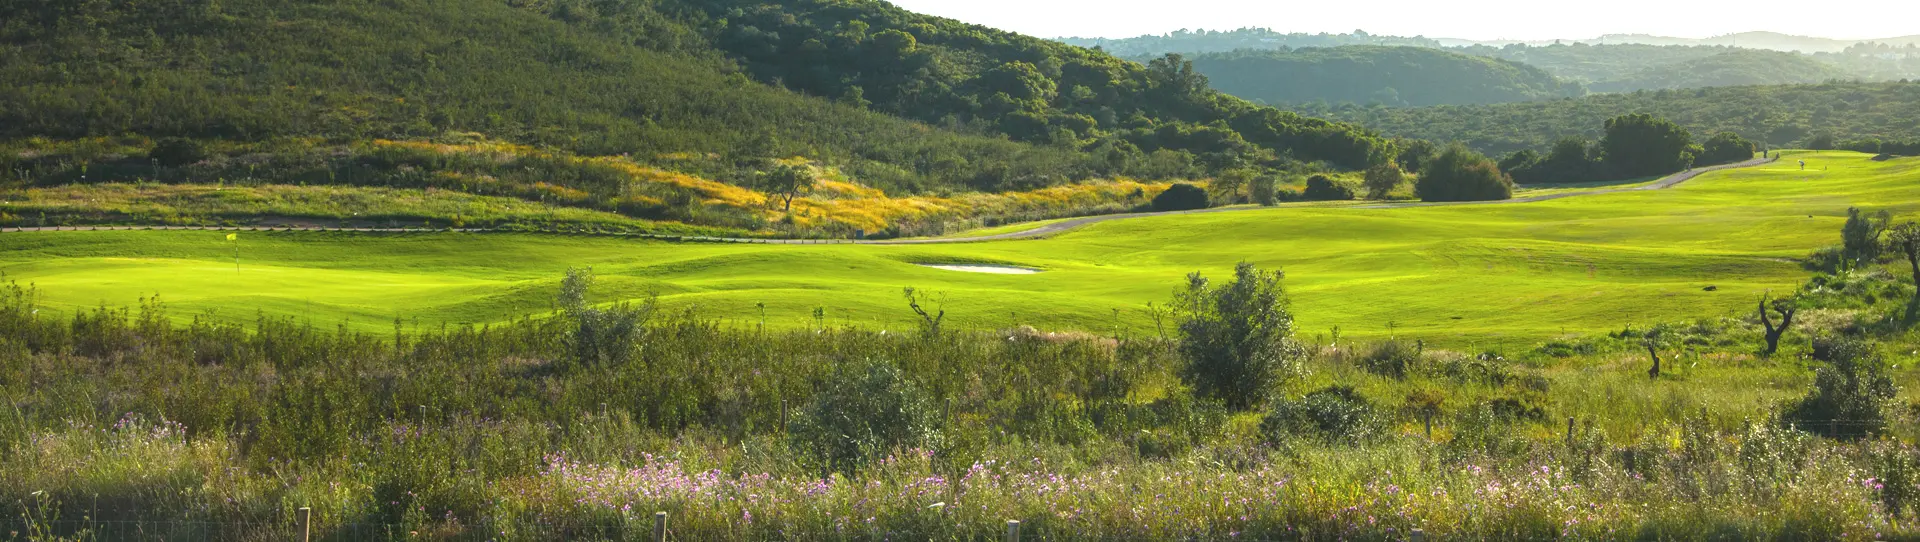 Portugal Golf Driving Range - Morgado do Reguengo Golf Academy - Photo 1